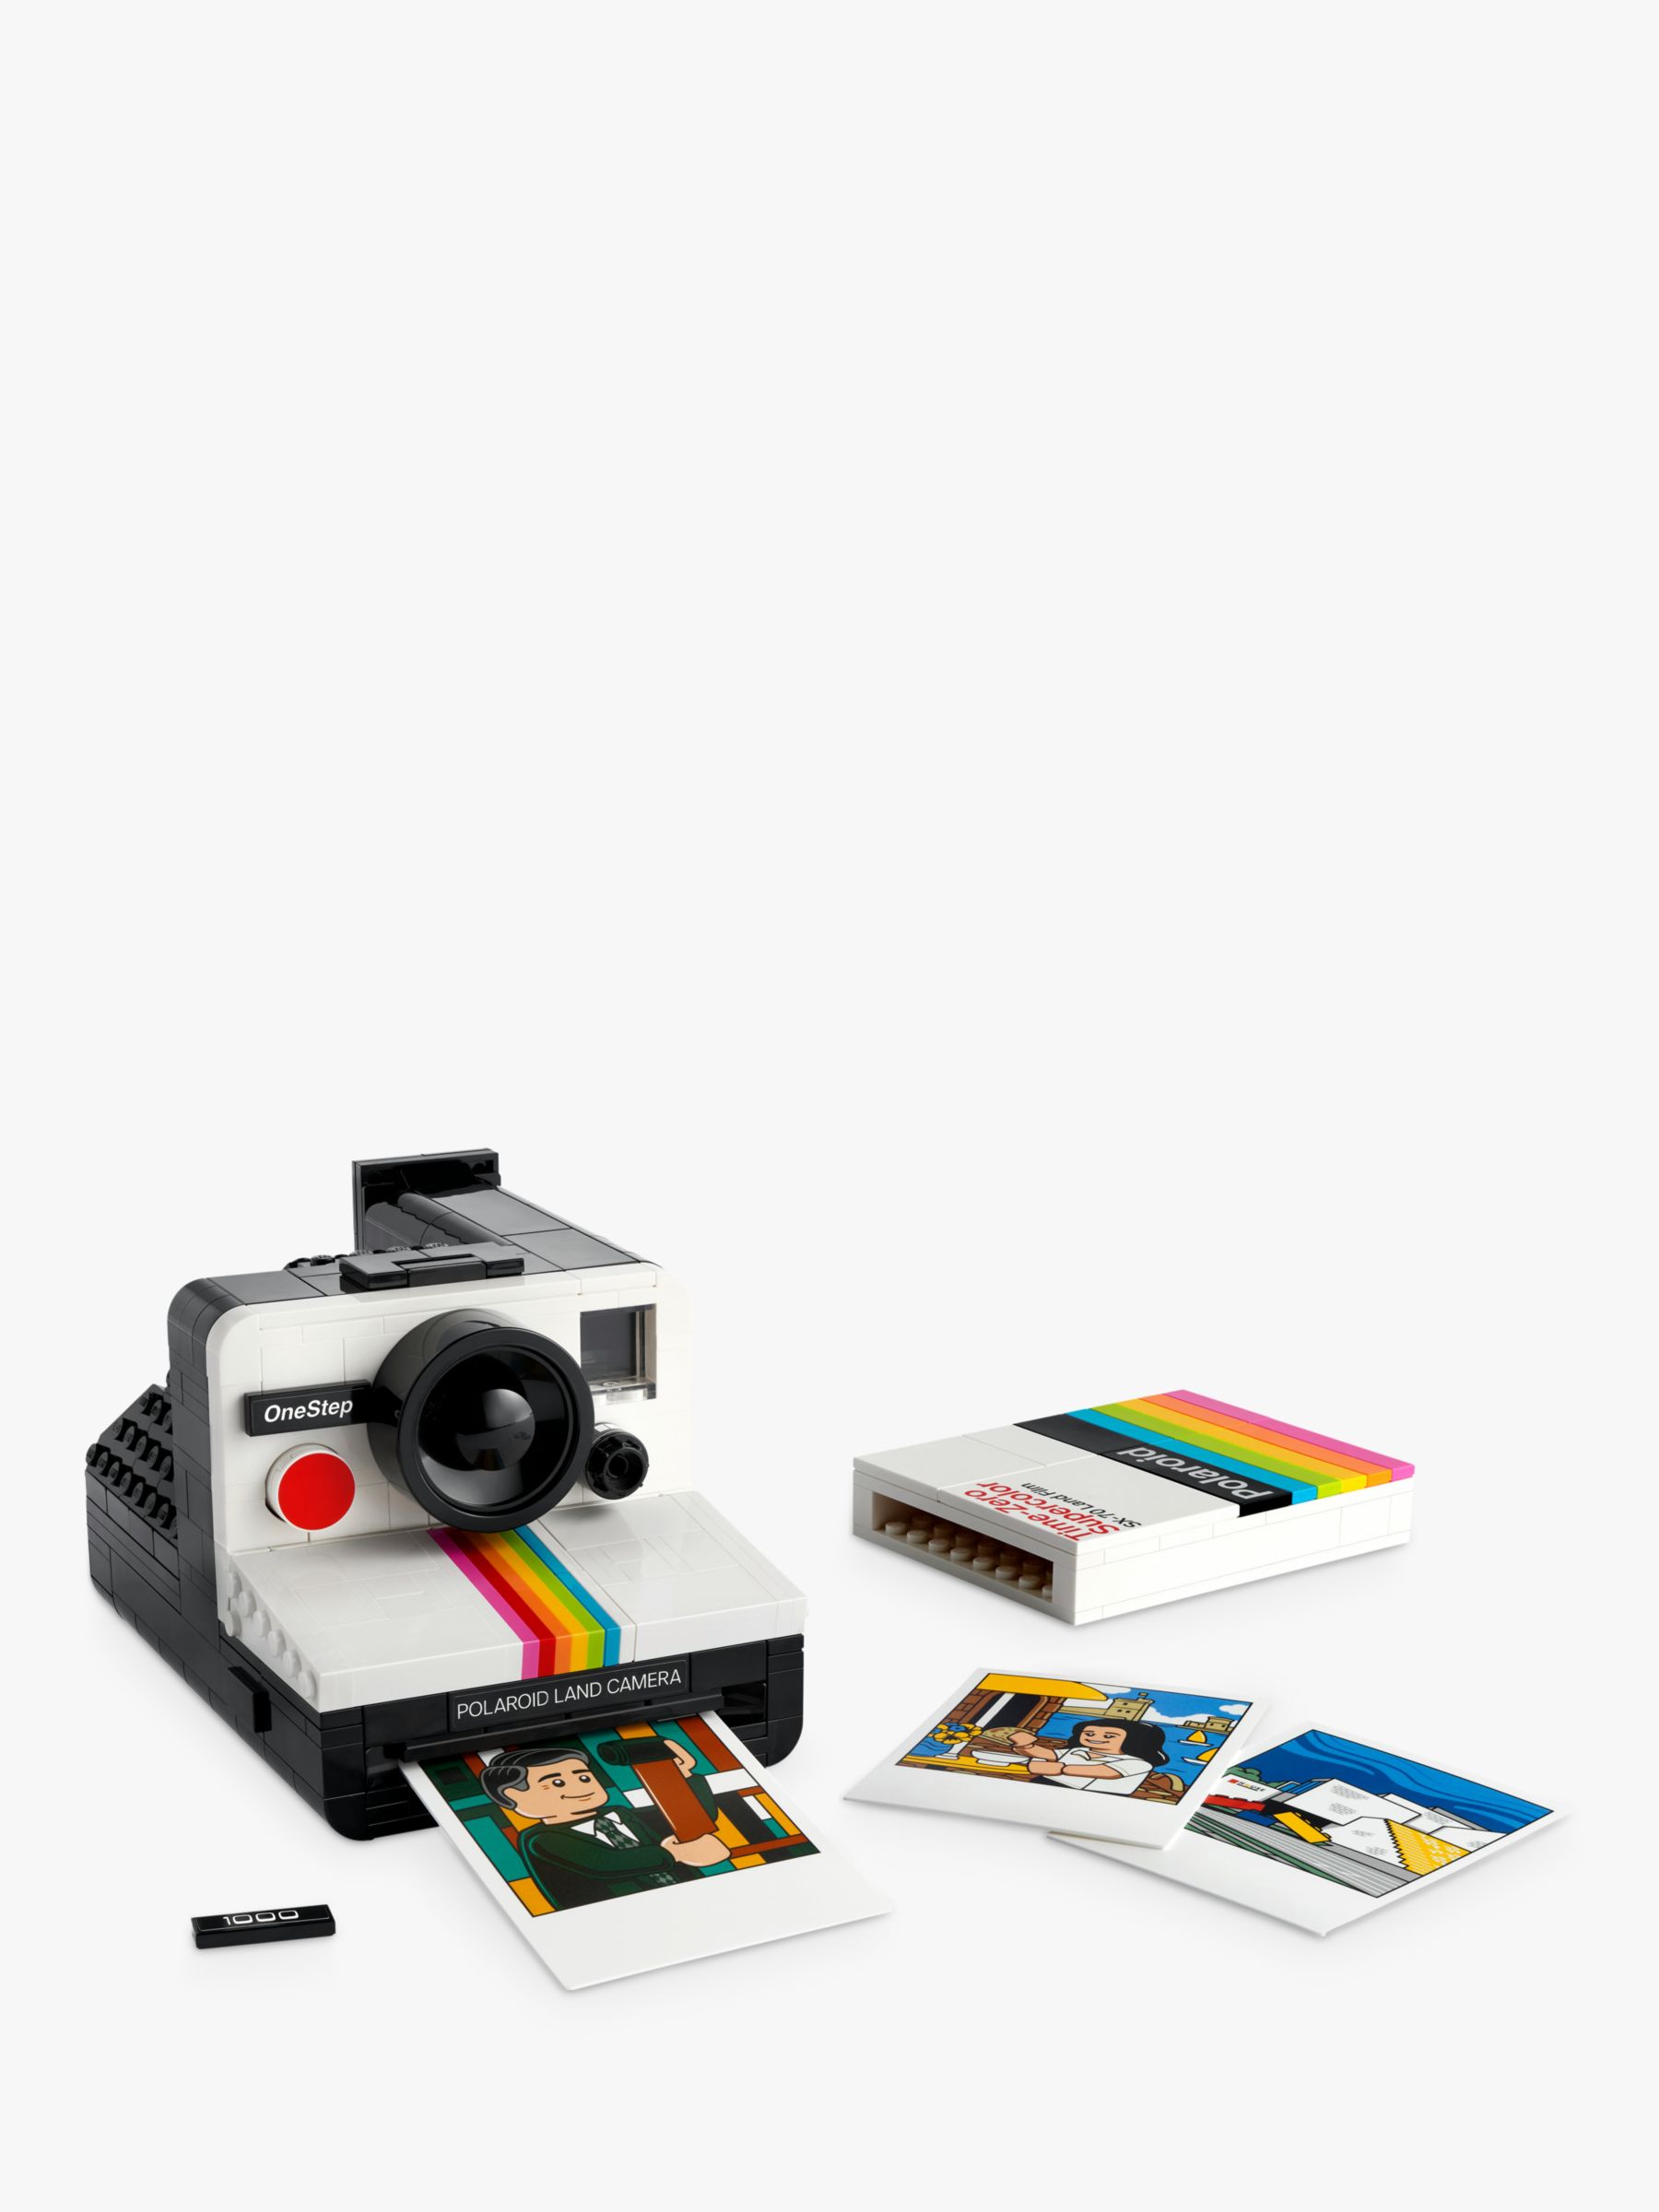 Review: LEGO 21345 Polaroid OneStep SX-70 Camera Set